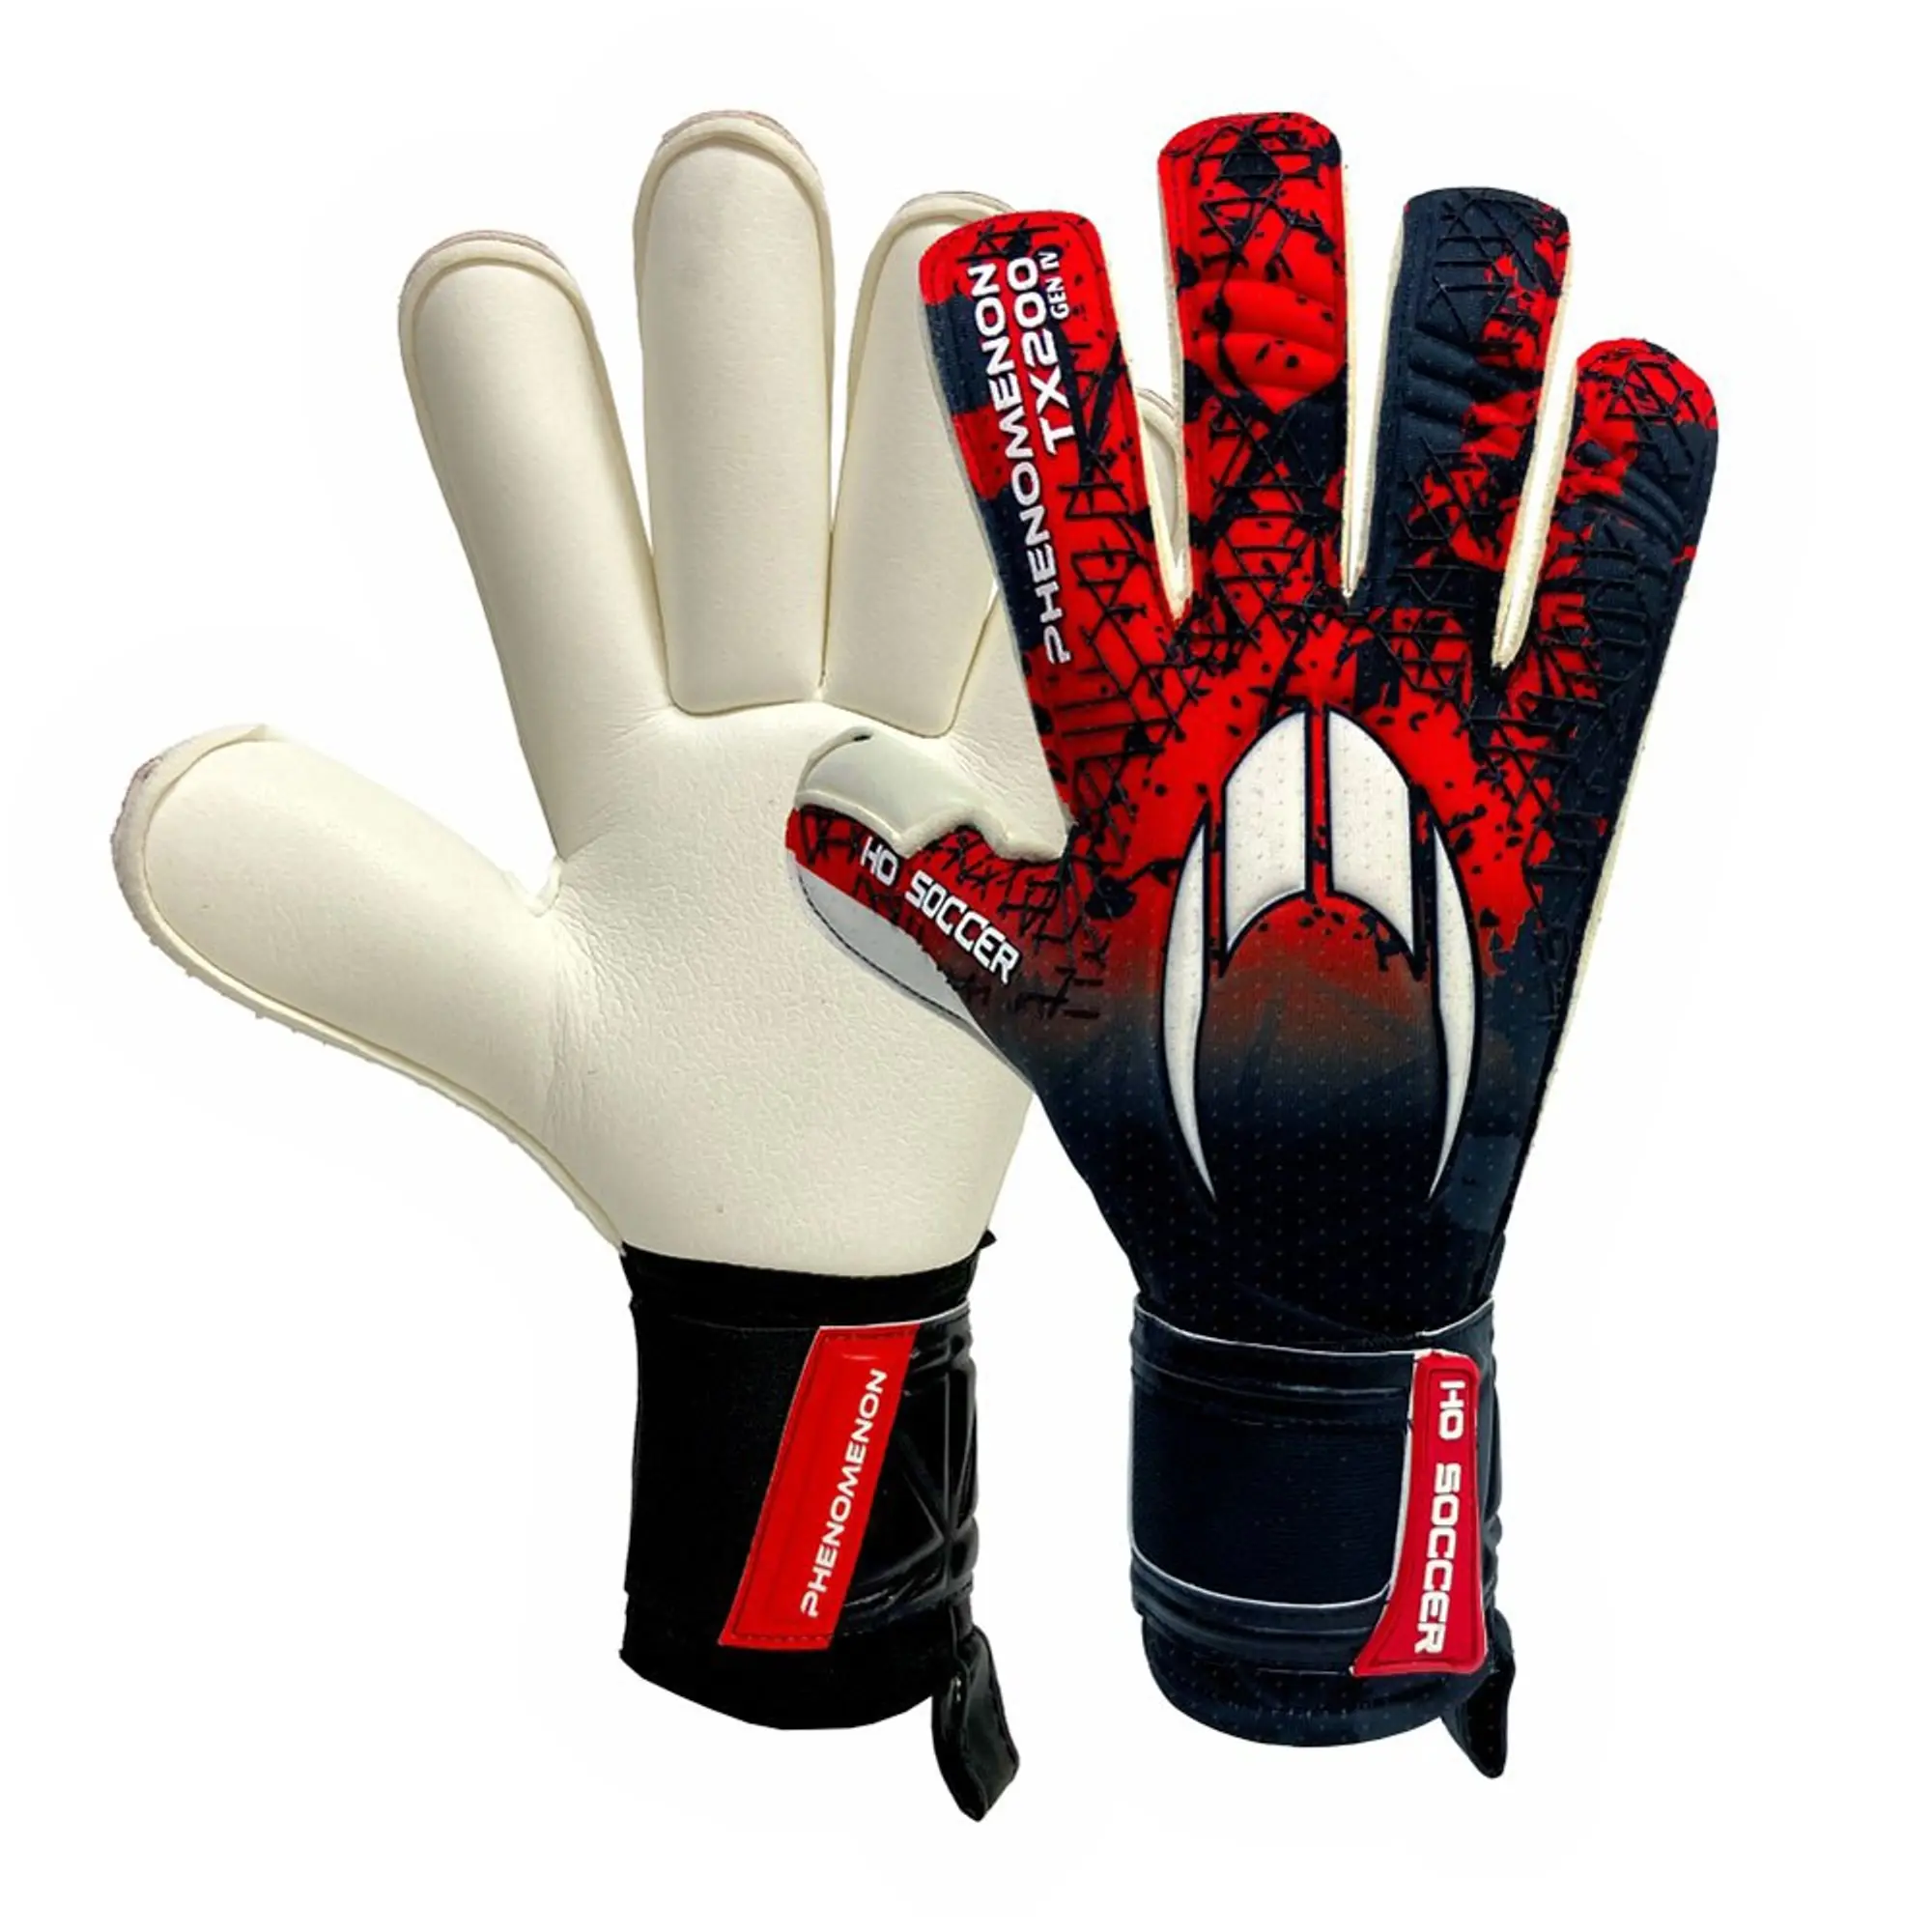 Ho Soccer Phenomenon Pro Iv Rollfinger Goalkeeper Gloves  10 1/2 -